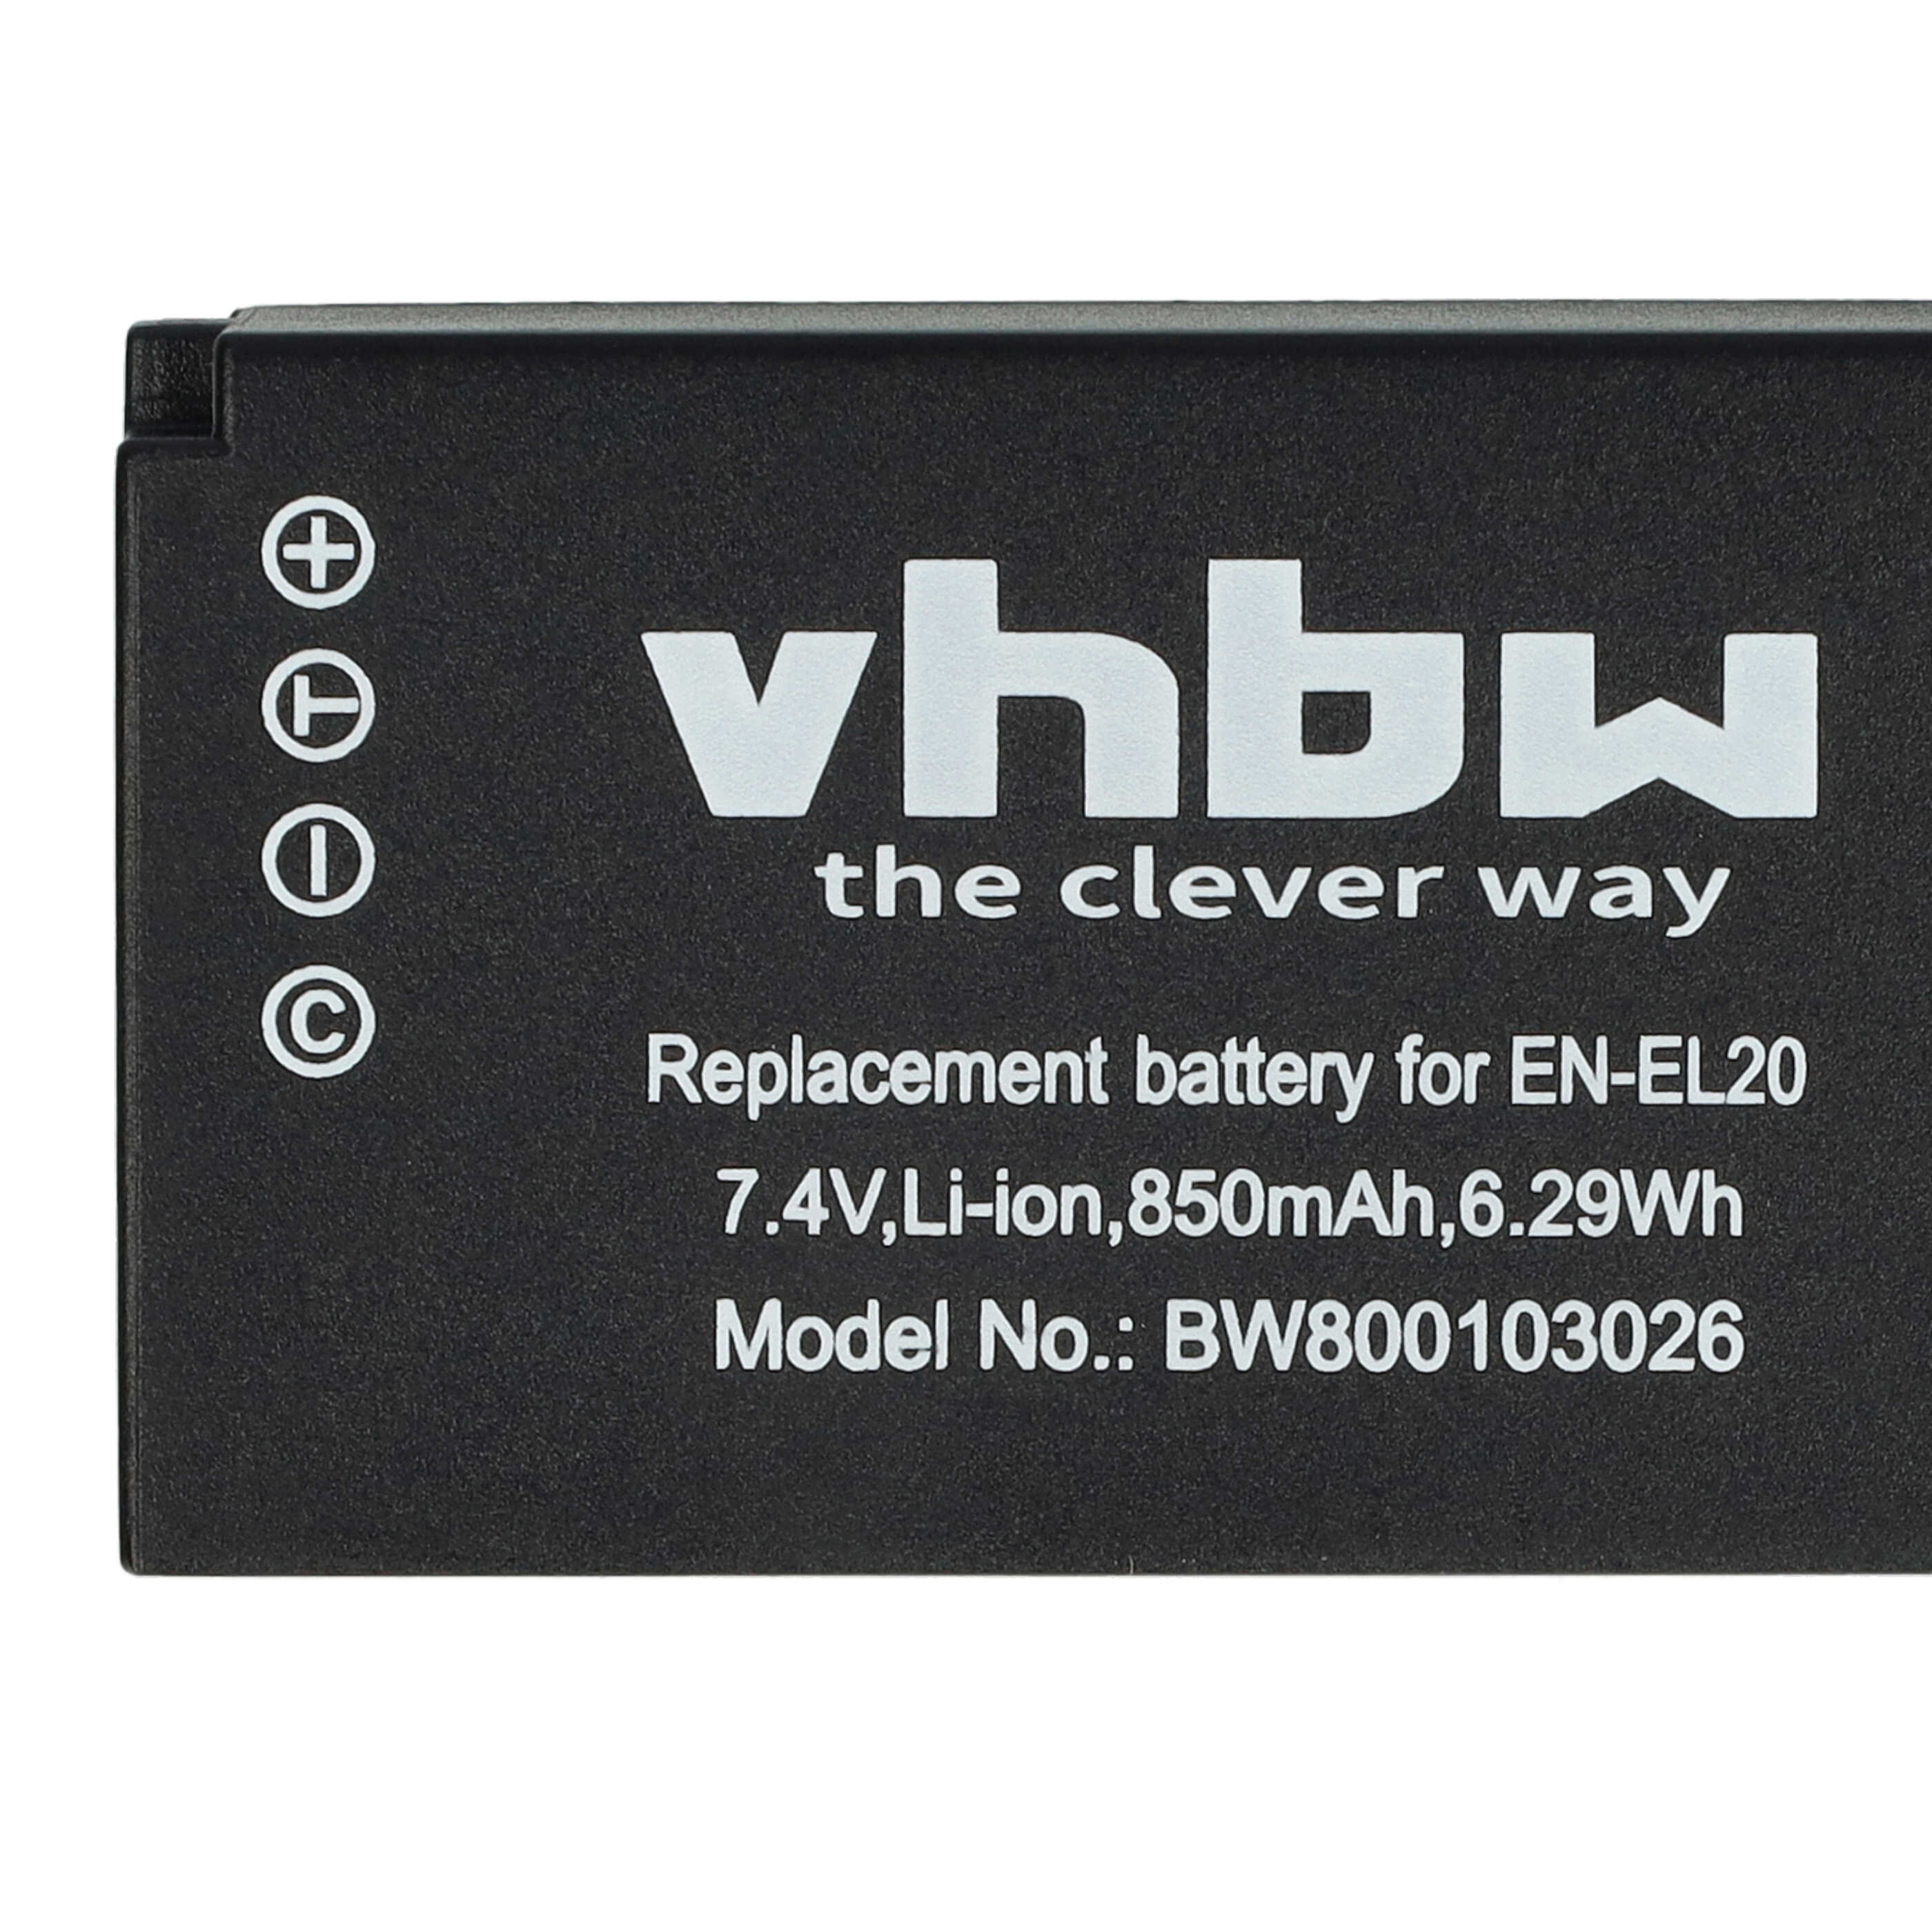 Battery (2 Units) Replacement for Nikon EN-EL20, EN-EL20a - 850mAh, 7.4V, Li-Ion